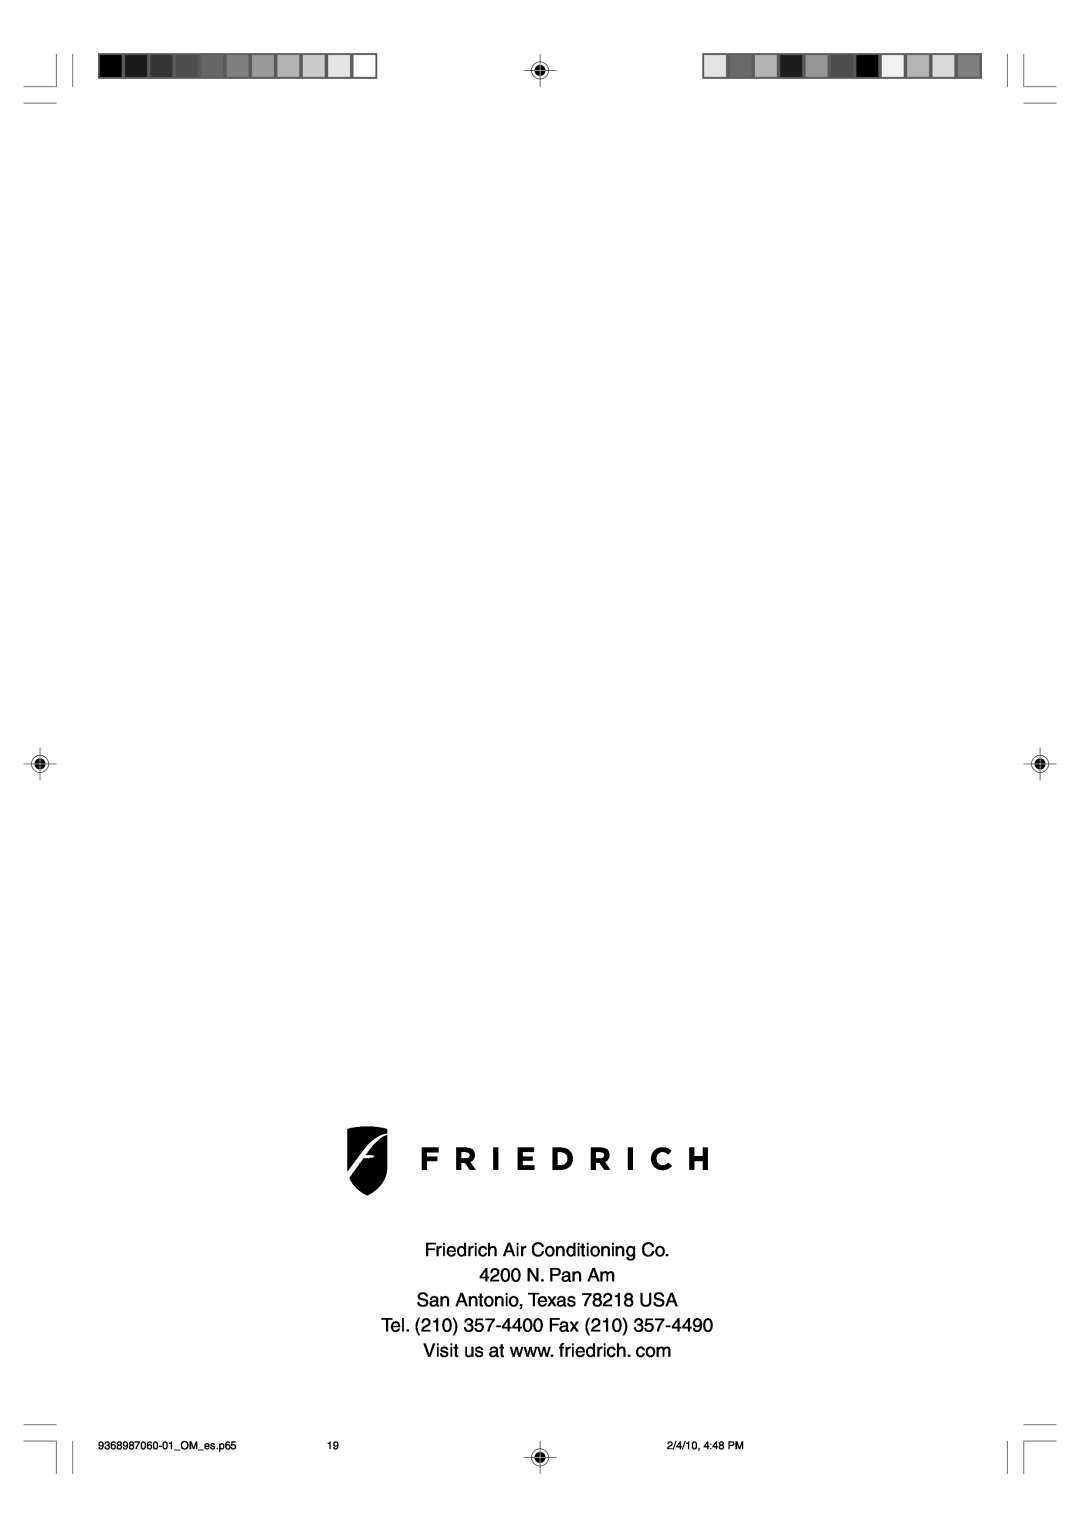 Friedrich P/N9368987060-01 manual Friedrich Air Conditioning Co 4200 N. Pan Am, San Antonio, Texas 78218 USA, OM es.p65 